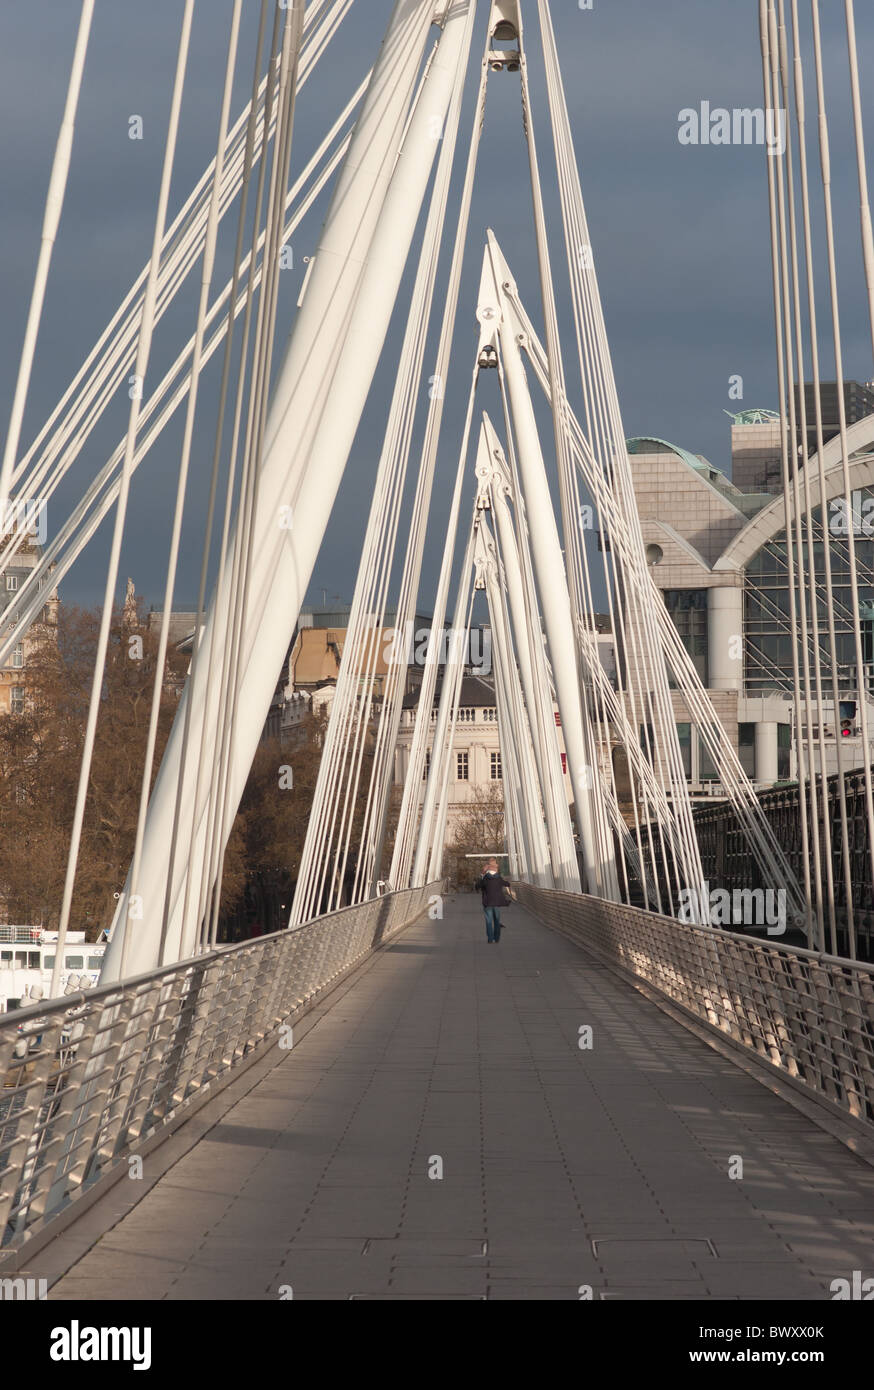 L'ouest de Golden Jubilee Bridge, avec la gare de Charing Cross dans l'arrière-plan à Londres, Angleterre, Royaume-Uni. Banque D'Images